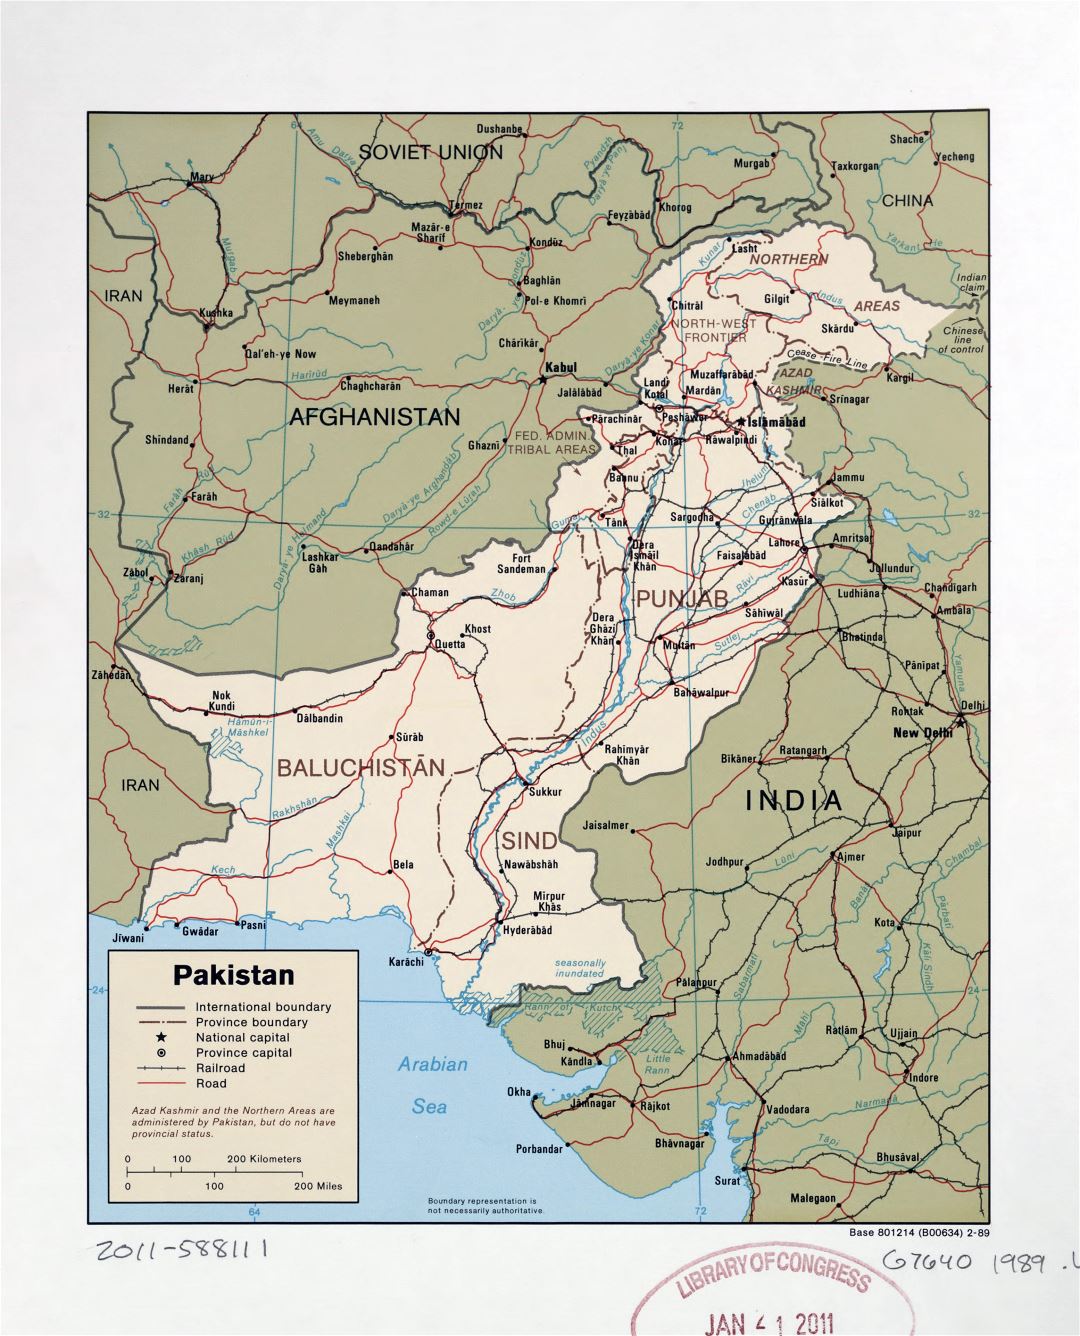 Grande detallado mapa político y administrativo de Pakistán con carreteras, ferrocarriles y principales ciudades - 1989